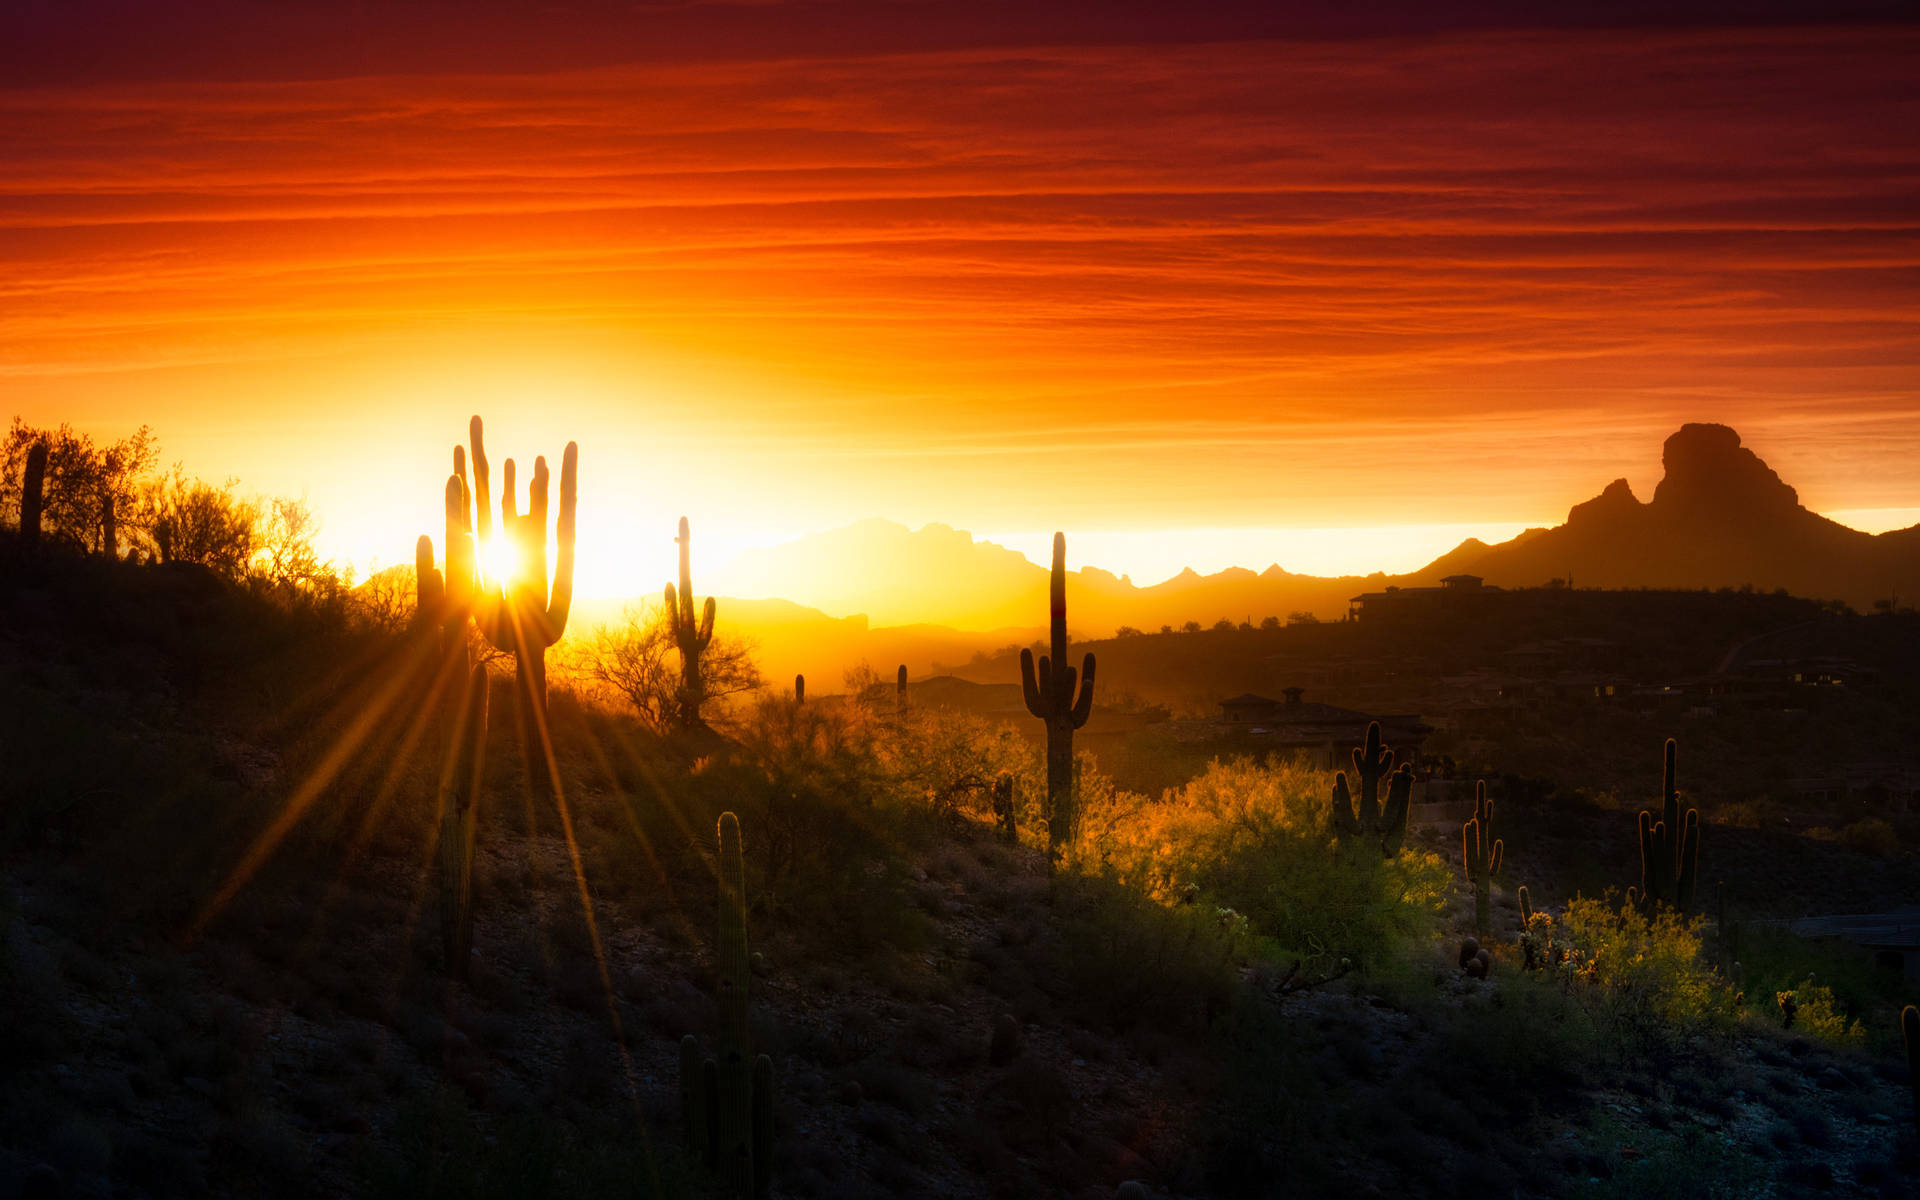 Sunrise And Cactus In Arizona Desert